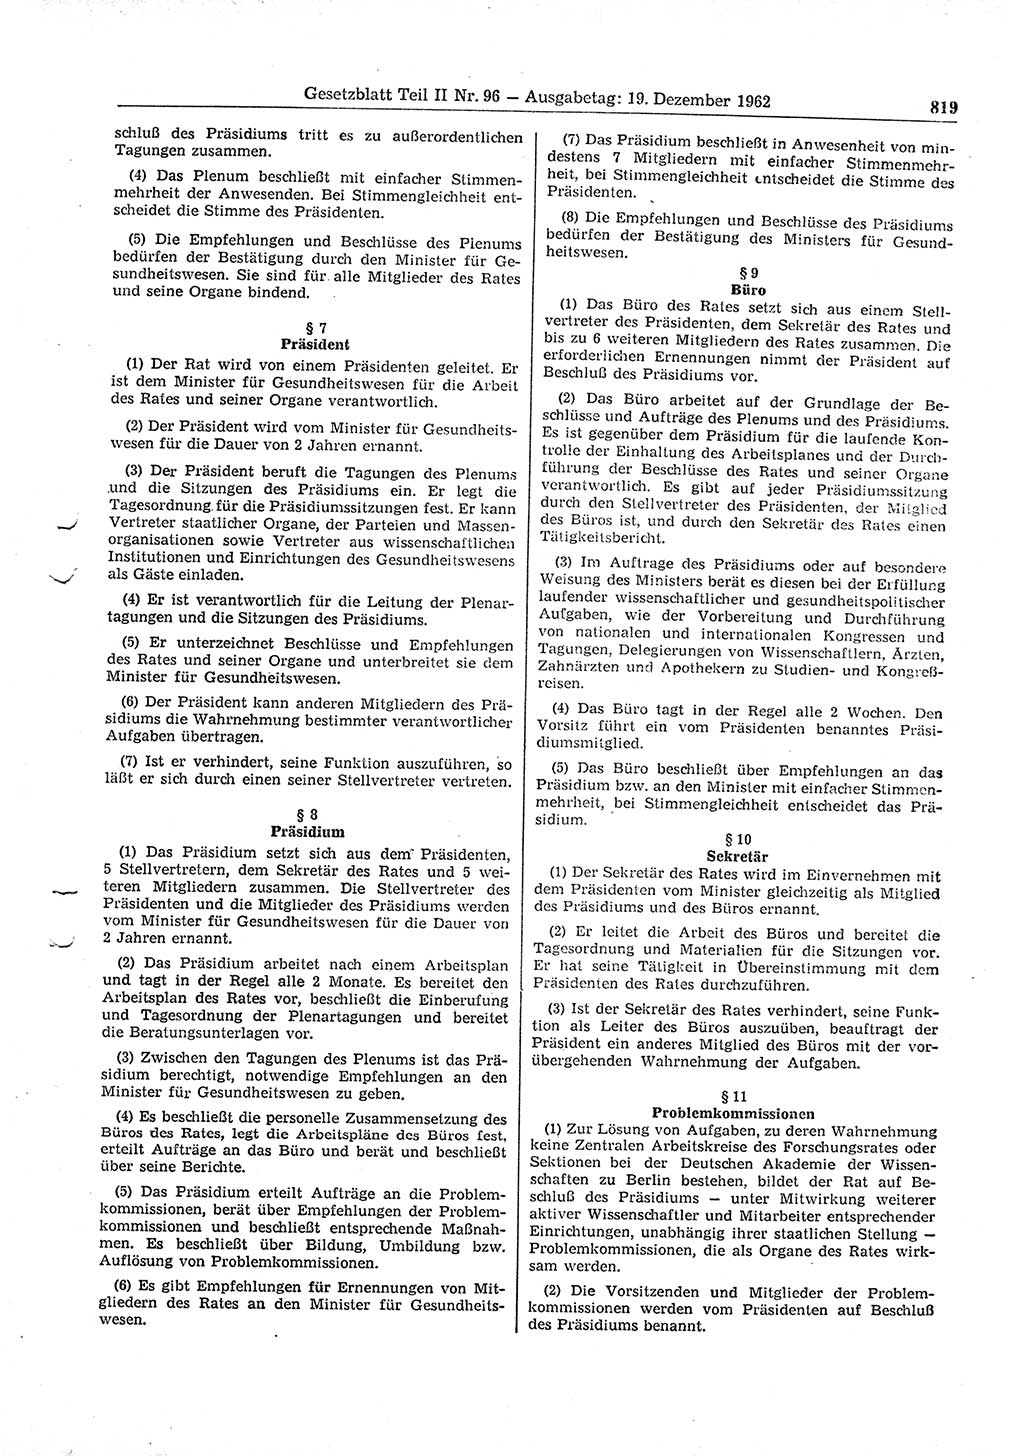 Gesetzblatt (GBl.) der Deutschen Demokratischen Republik (DDR) Teil ⅠⅠ 1962, Seite 819 (GBl. DDR ⅠⅠ 1962, S. 819)